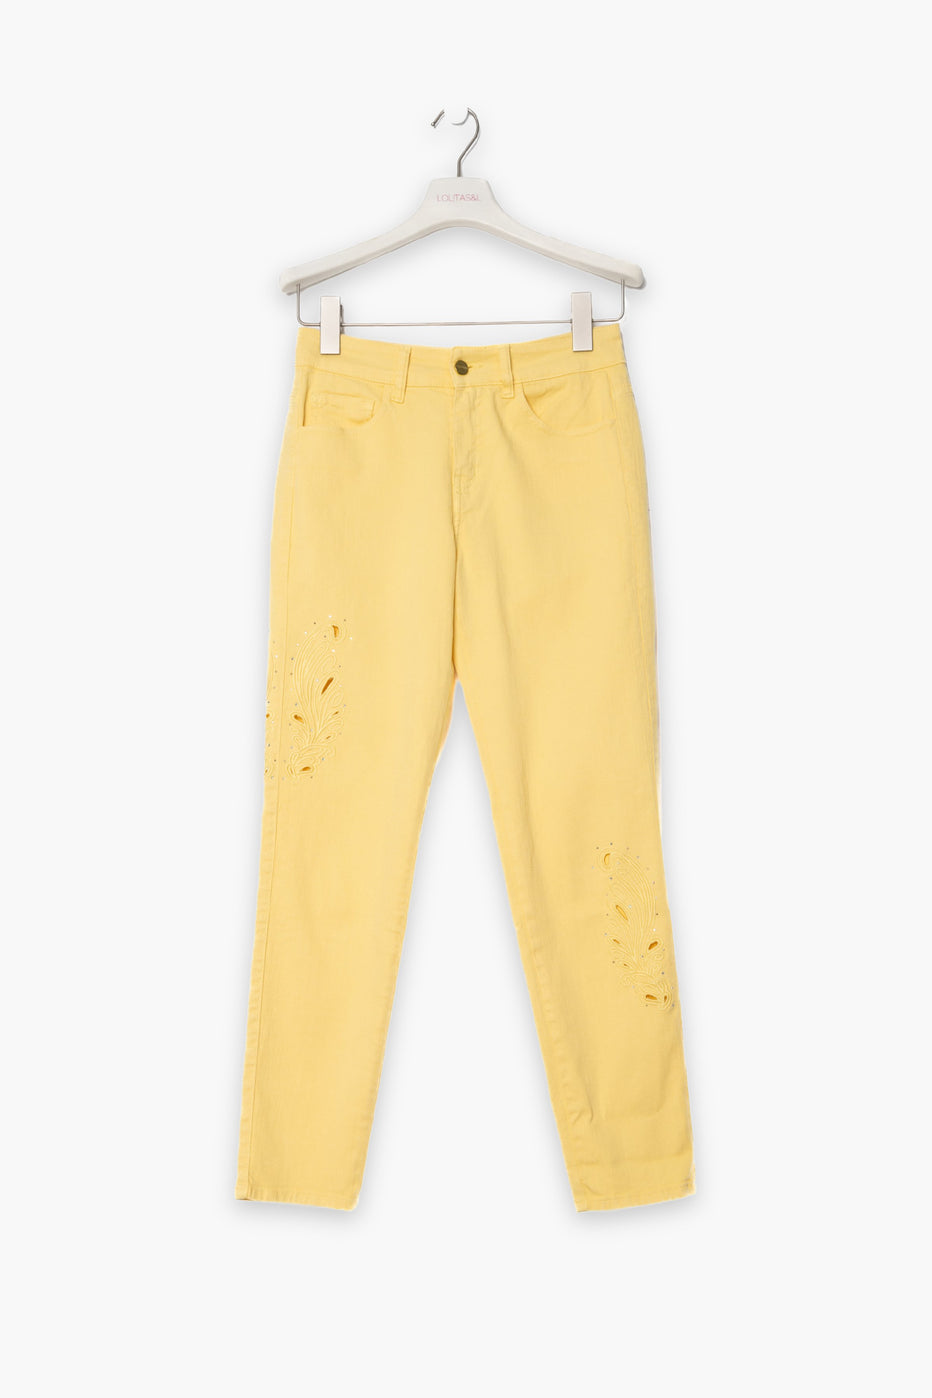 Pantalón amarillo pitillo cinco bolsillos con bordado calado LolitasyL - lolitasyl.com